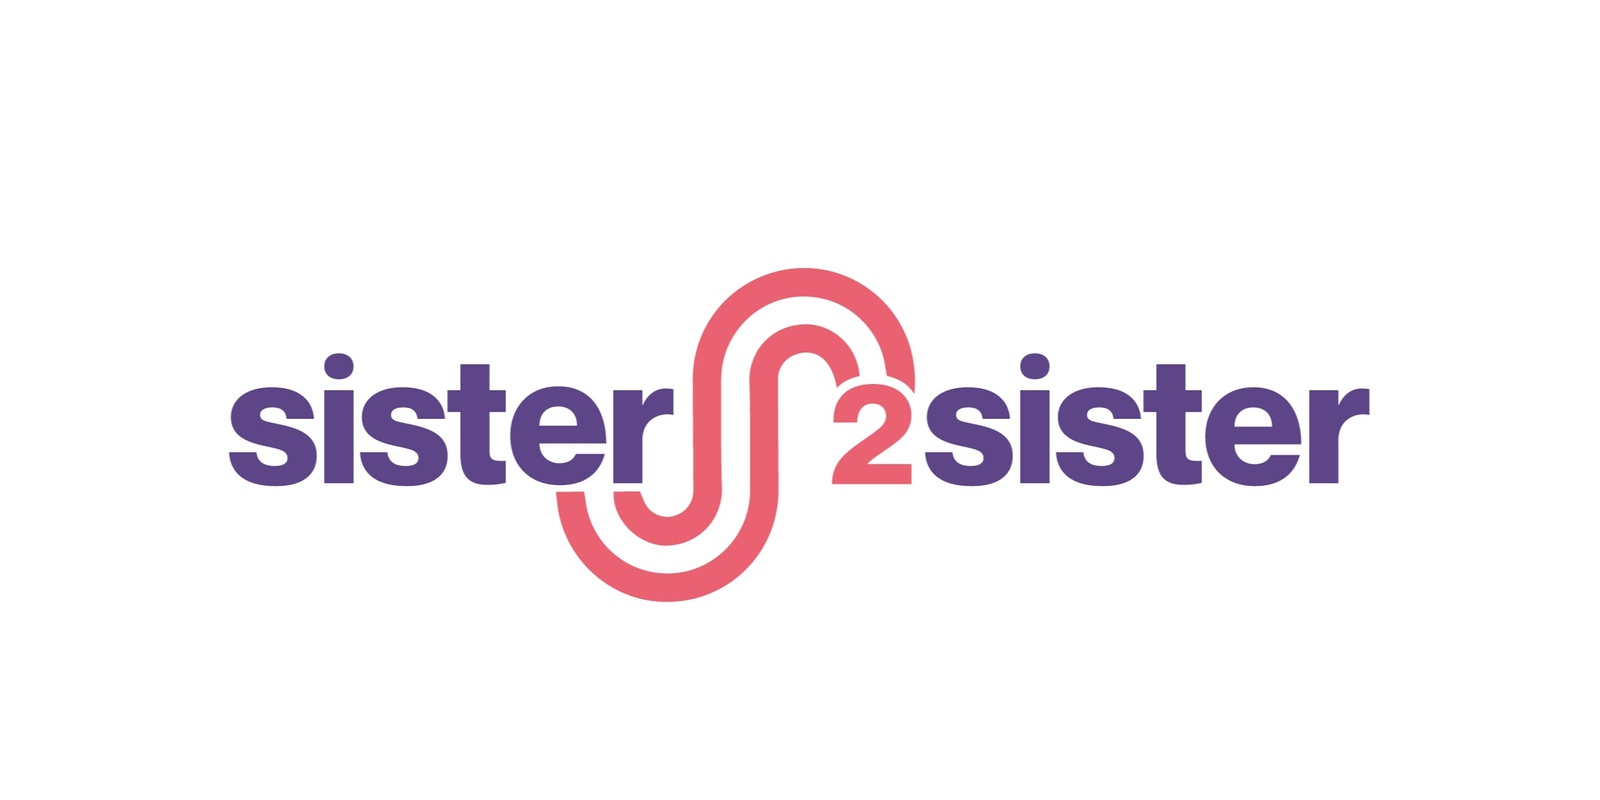 Sister2sister Foundation's banner